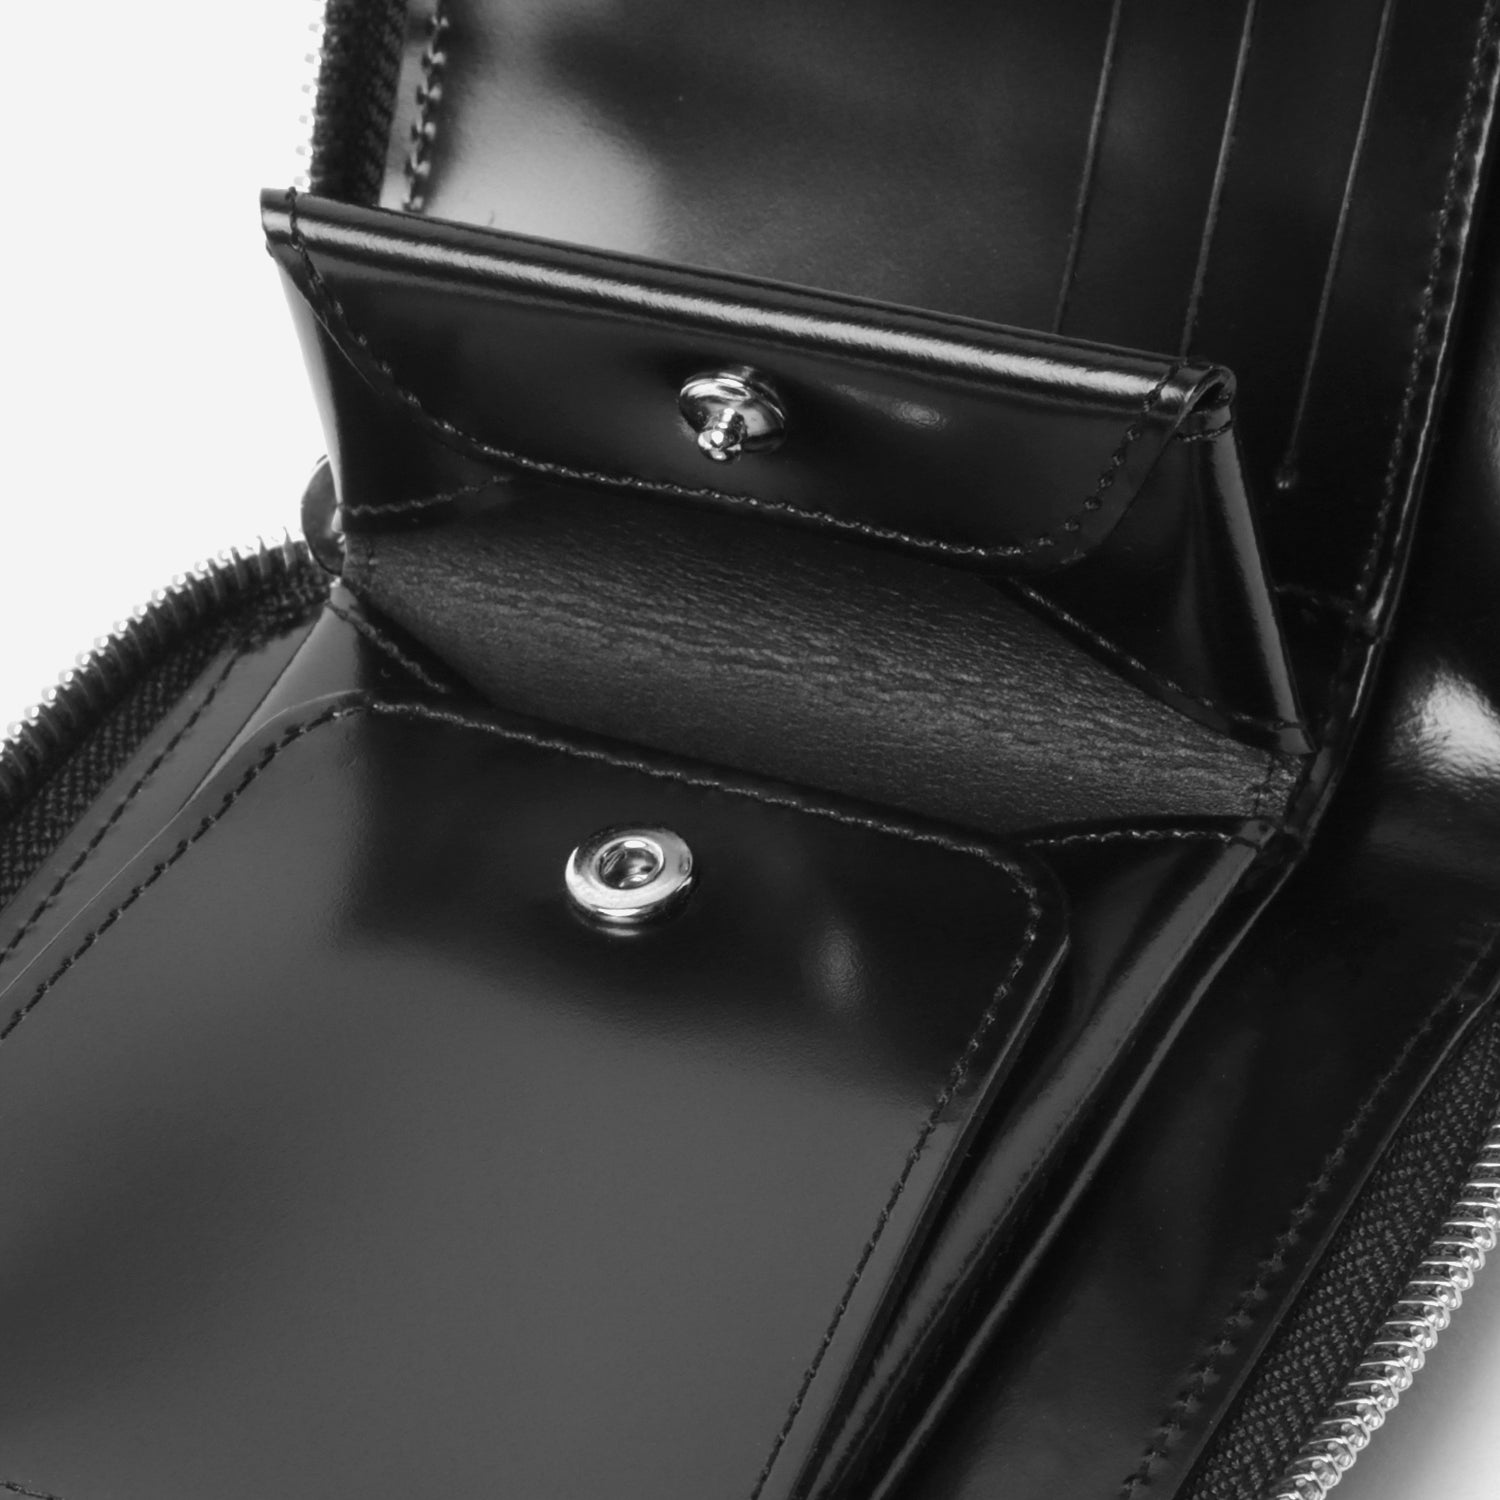 Embossed Zip Around Wallet / black × silver